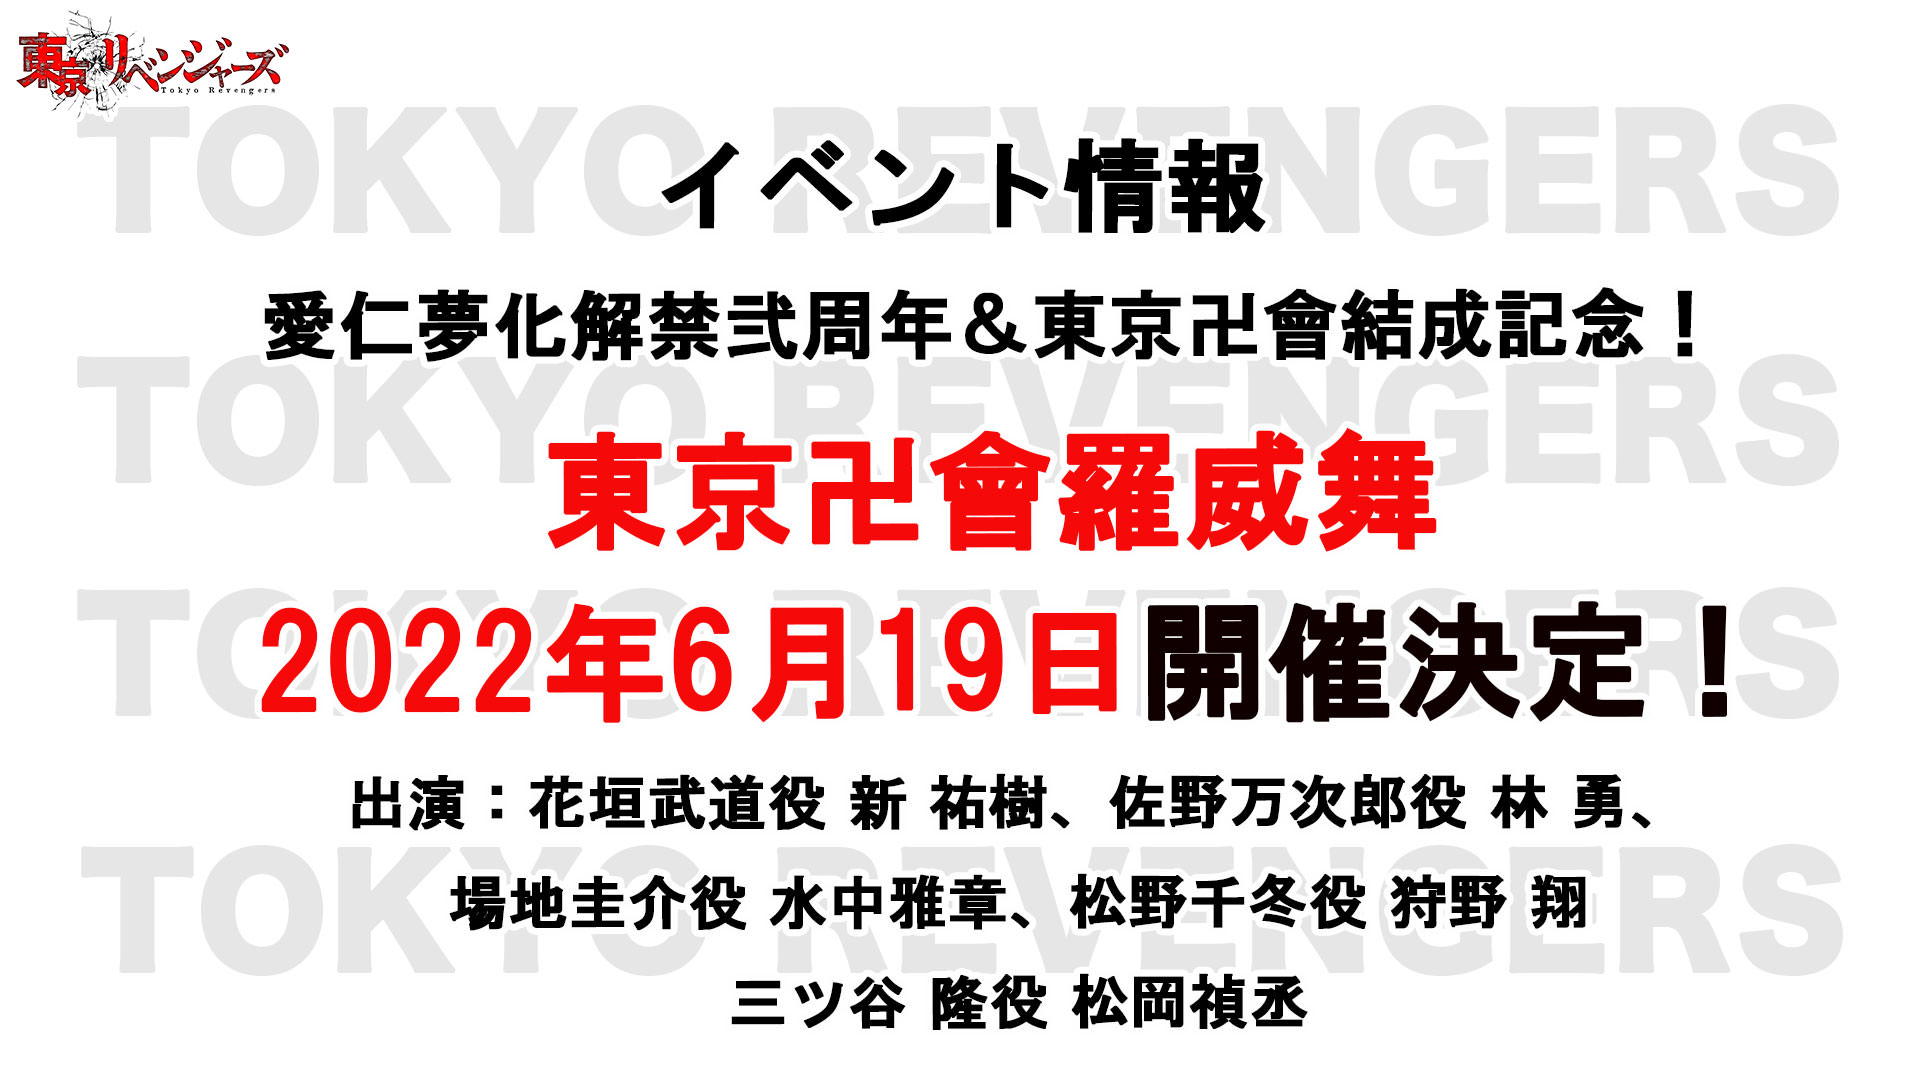 東京リベンジャーズ 東卍結成日である6月19日にスペシャルイベント開催